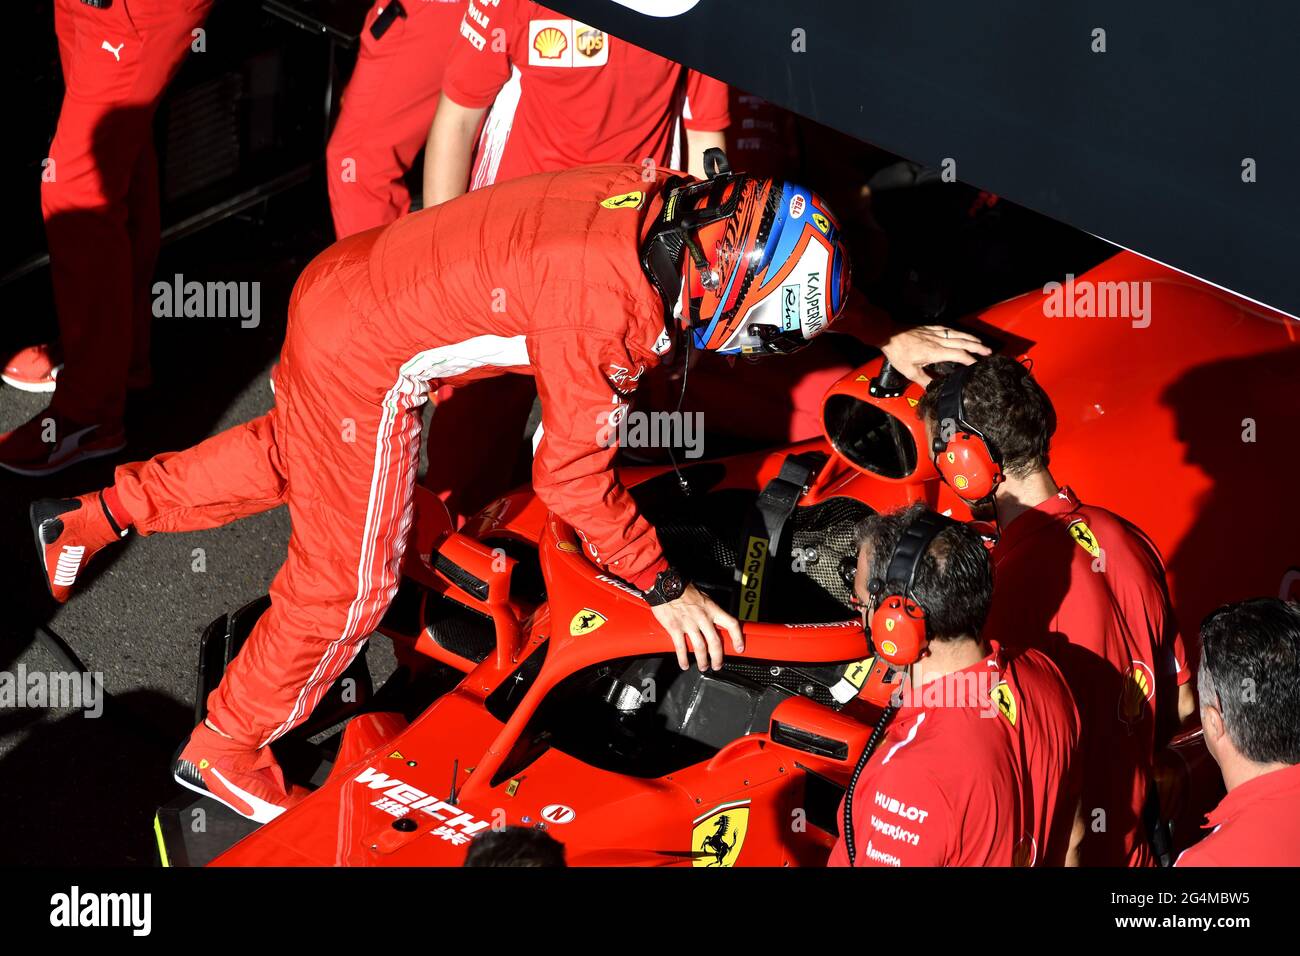 Die Boxenstoppmannschaft von Ferrari, die während einer Ausstellung in Mailand, Italien, um den Ferrari Formel 1 an der Box von Ferrari herum arbeitet. Stockfoto